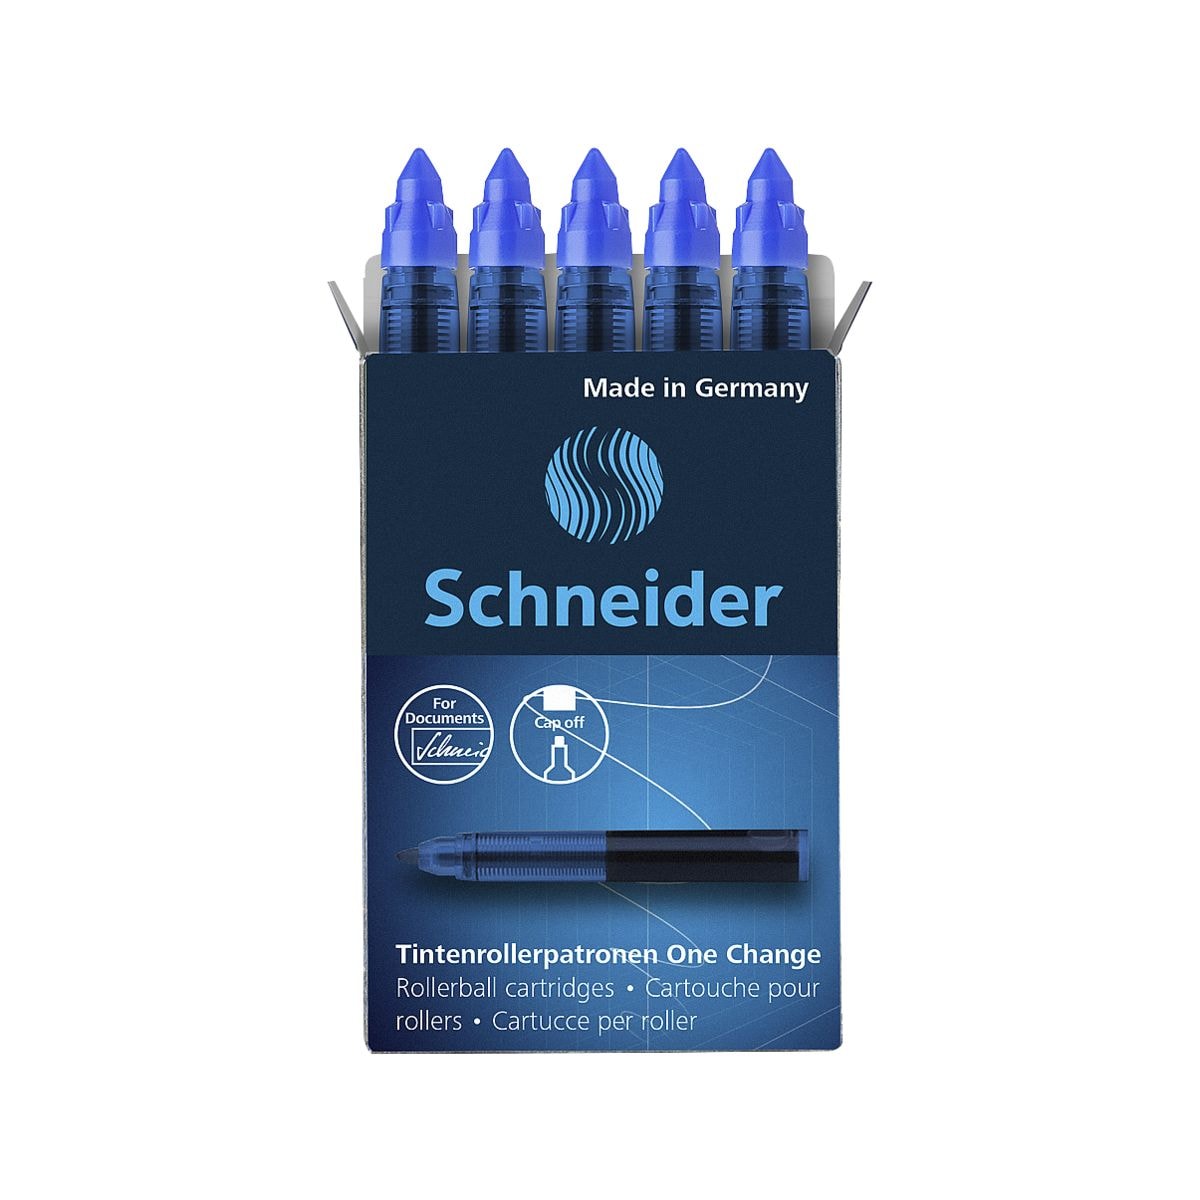 Schneider 5er-Pack Tintenrollerpatrone One Change 1854